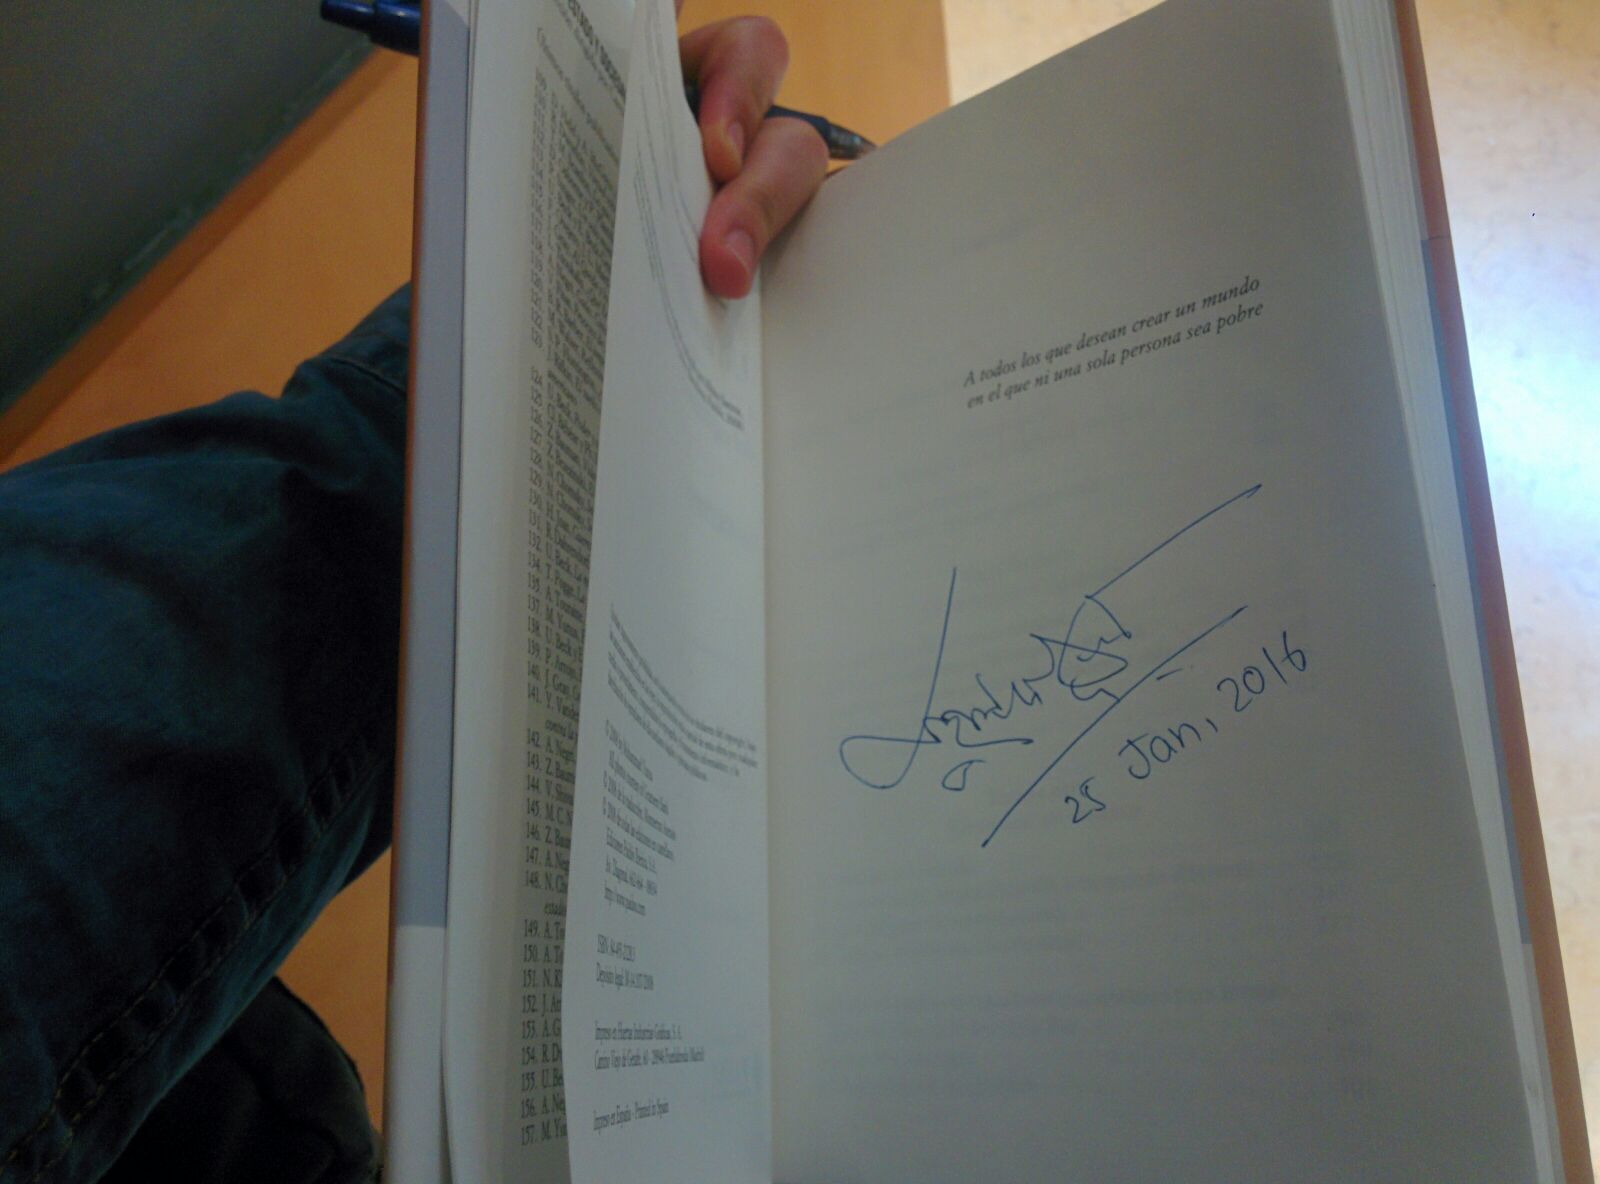 Yunus' signature